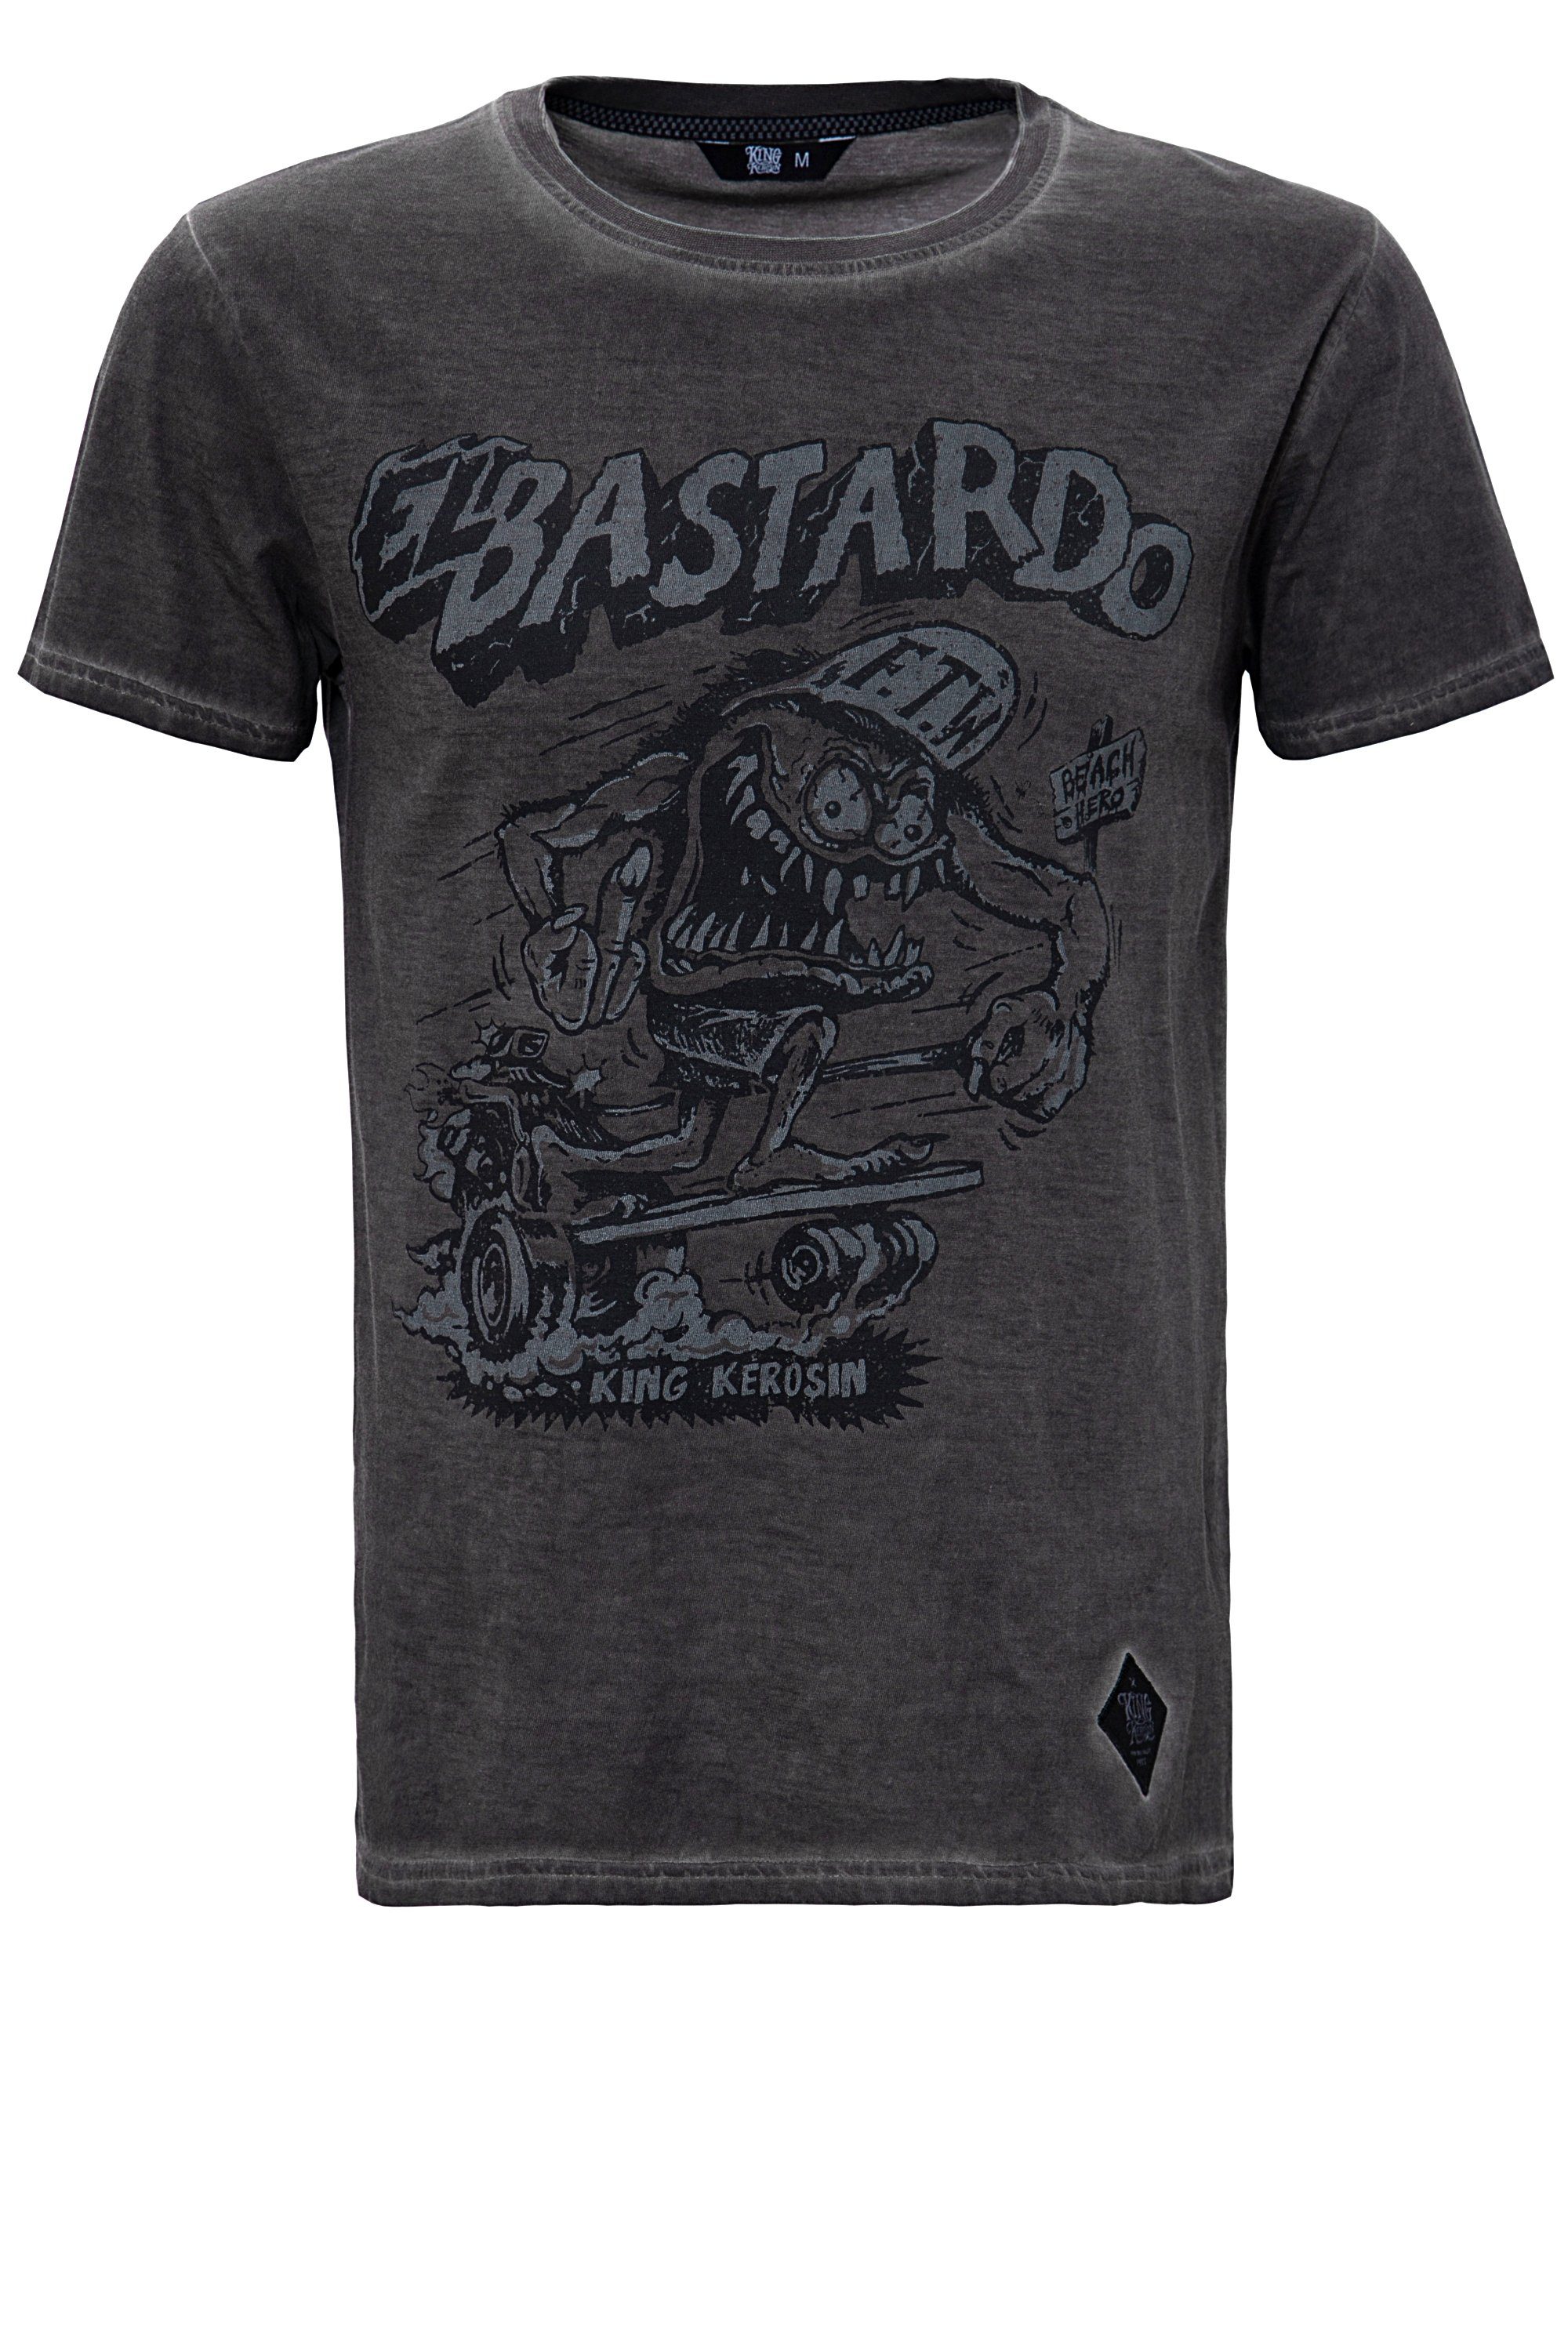 Bastardo KingKerosin im El T-Shirt Used Look